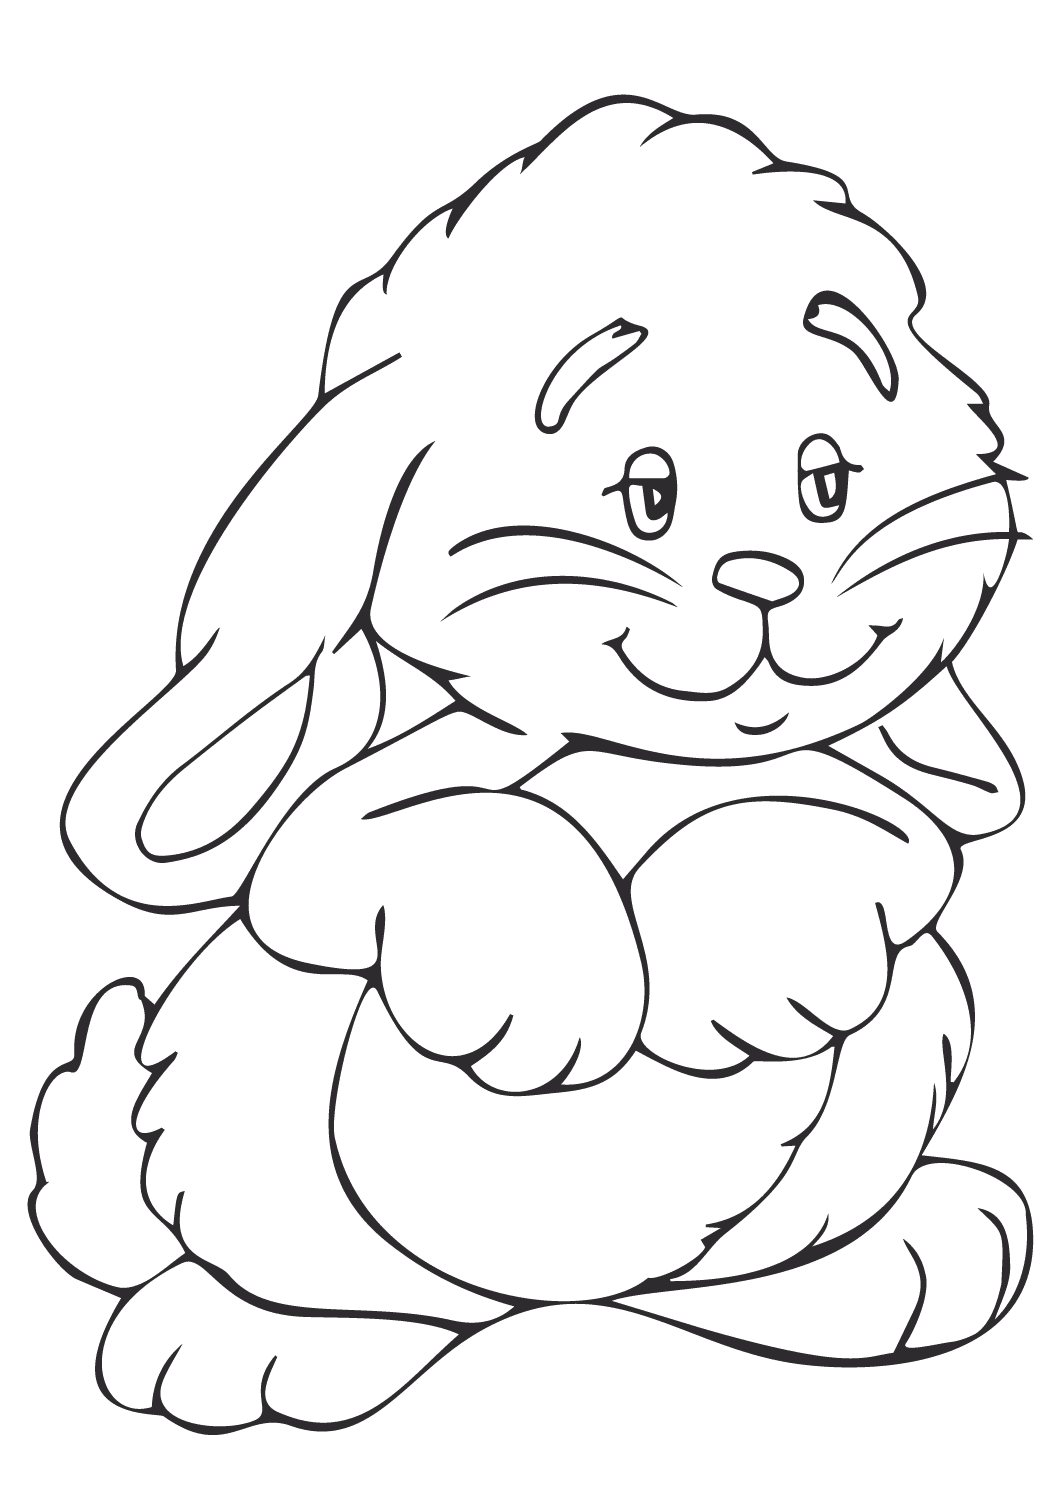 Joli lapin debout sur deux pattes de Bunny